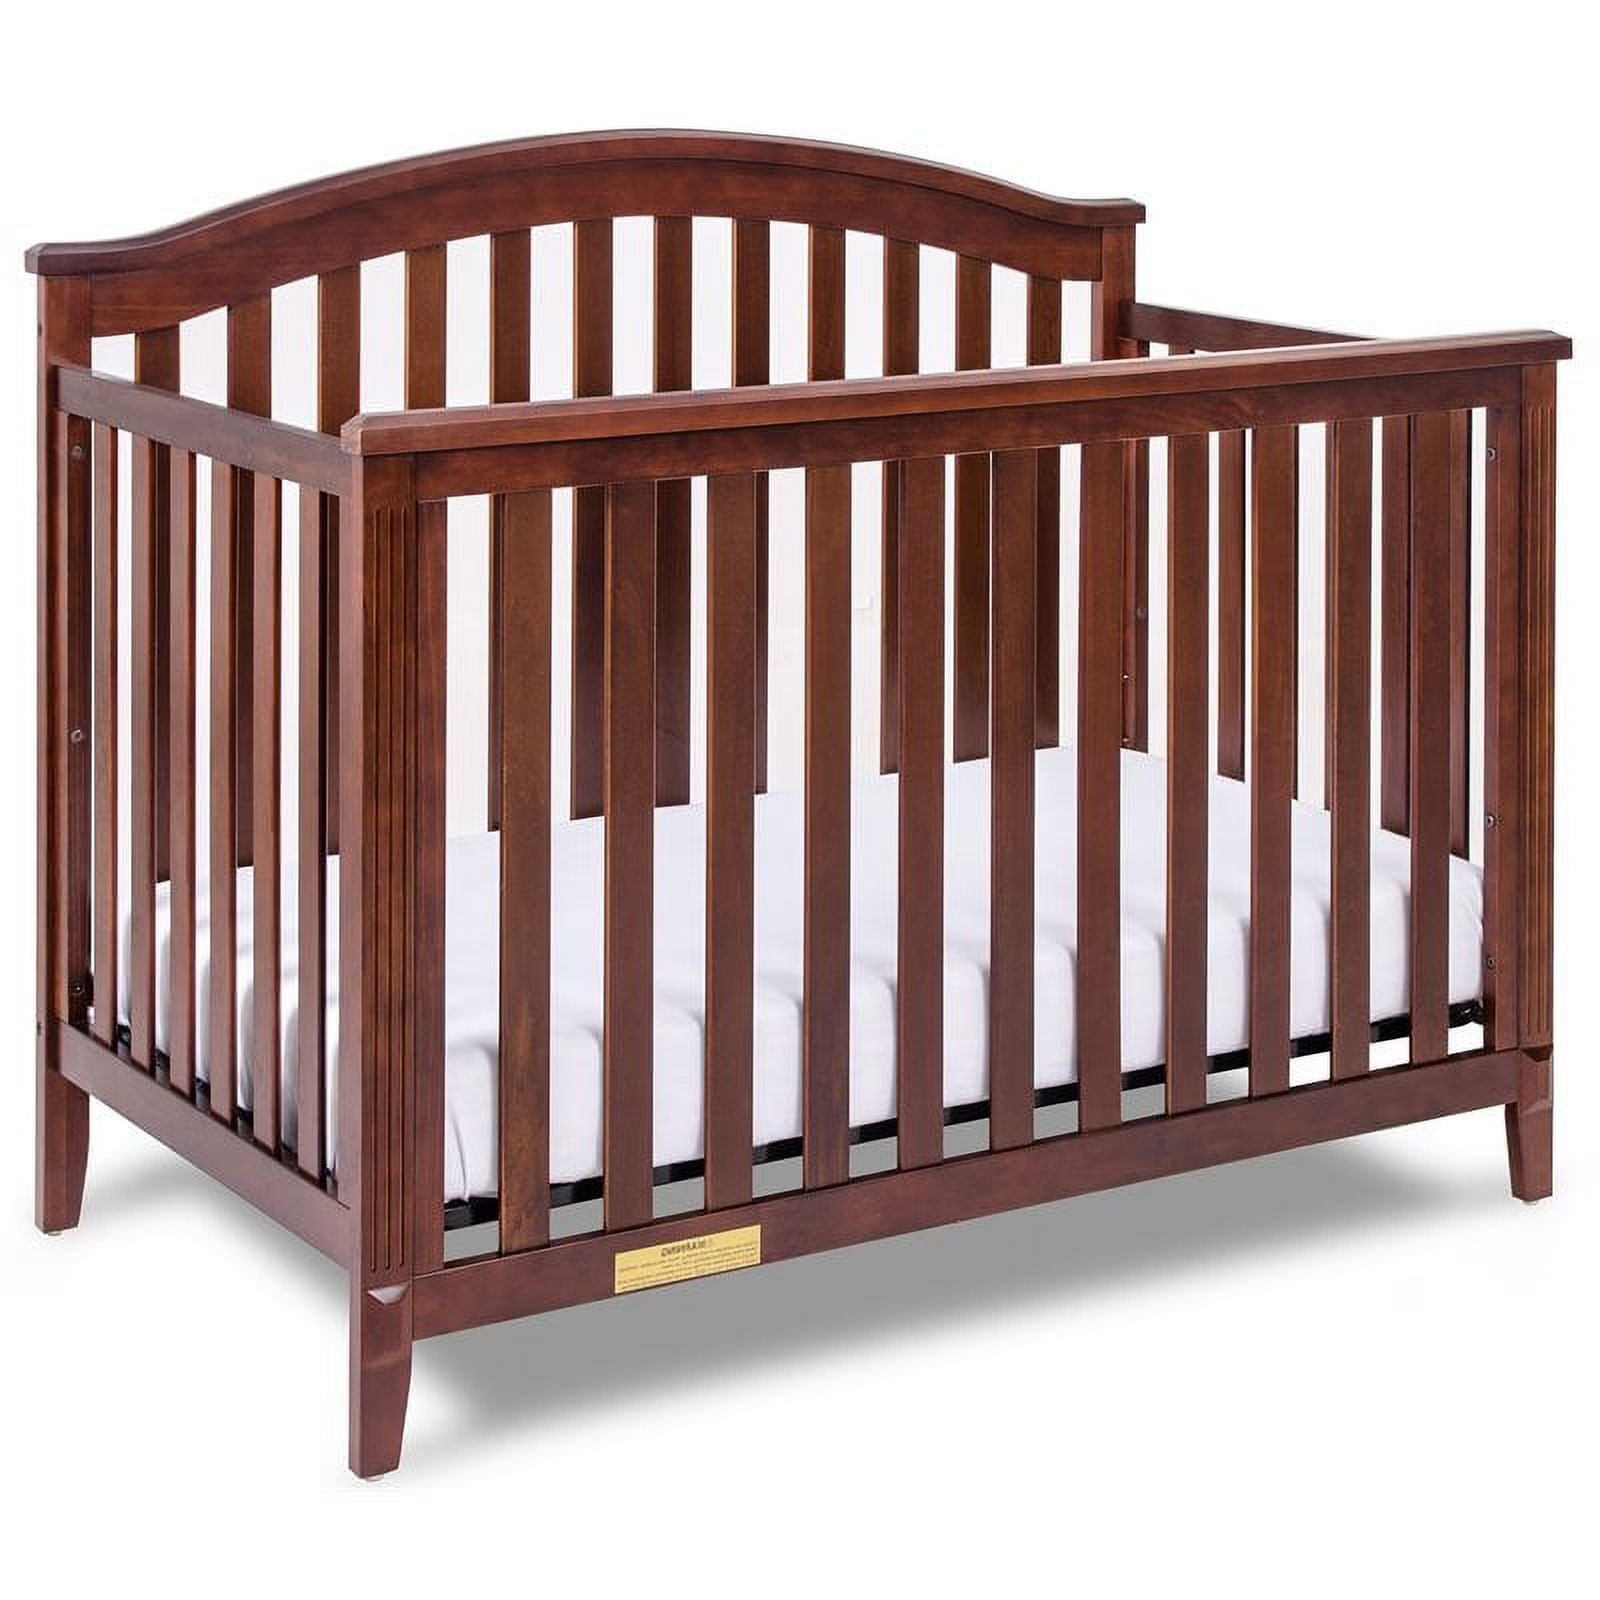 F457e 4-in-1 Baby Crib Furniture Kali Ii - Espresso